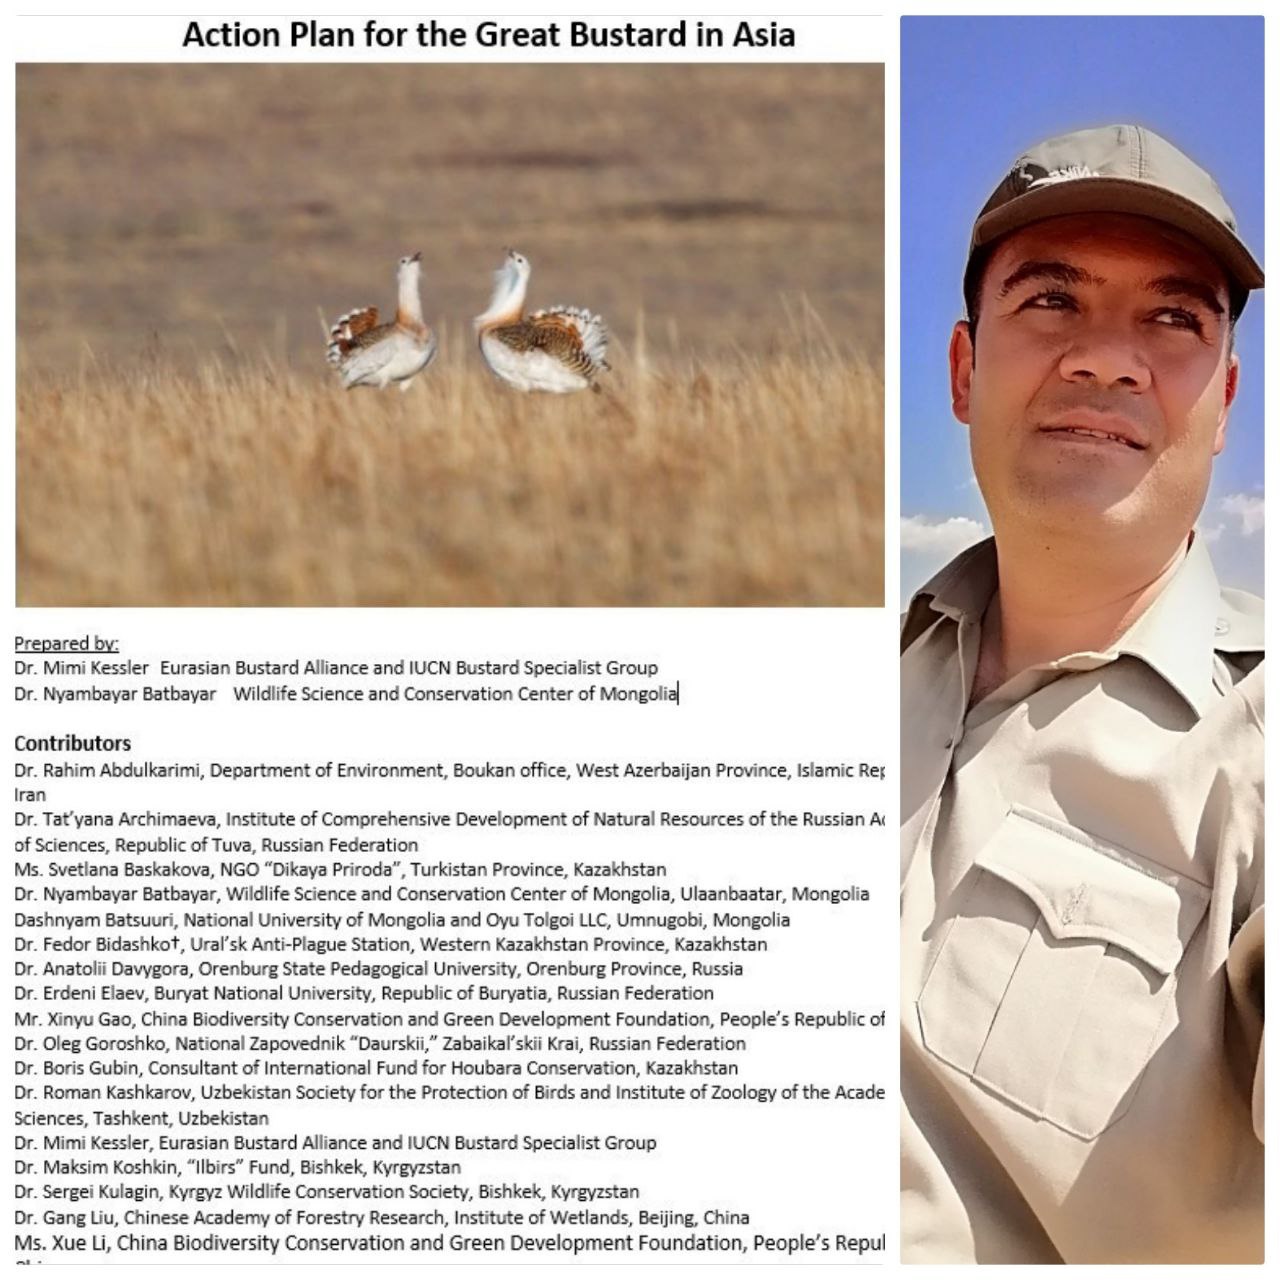 گام نهایی تدوین برنامه حفاظت از میش مرغ آسیا با حضور محقق بوکانی